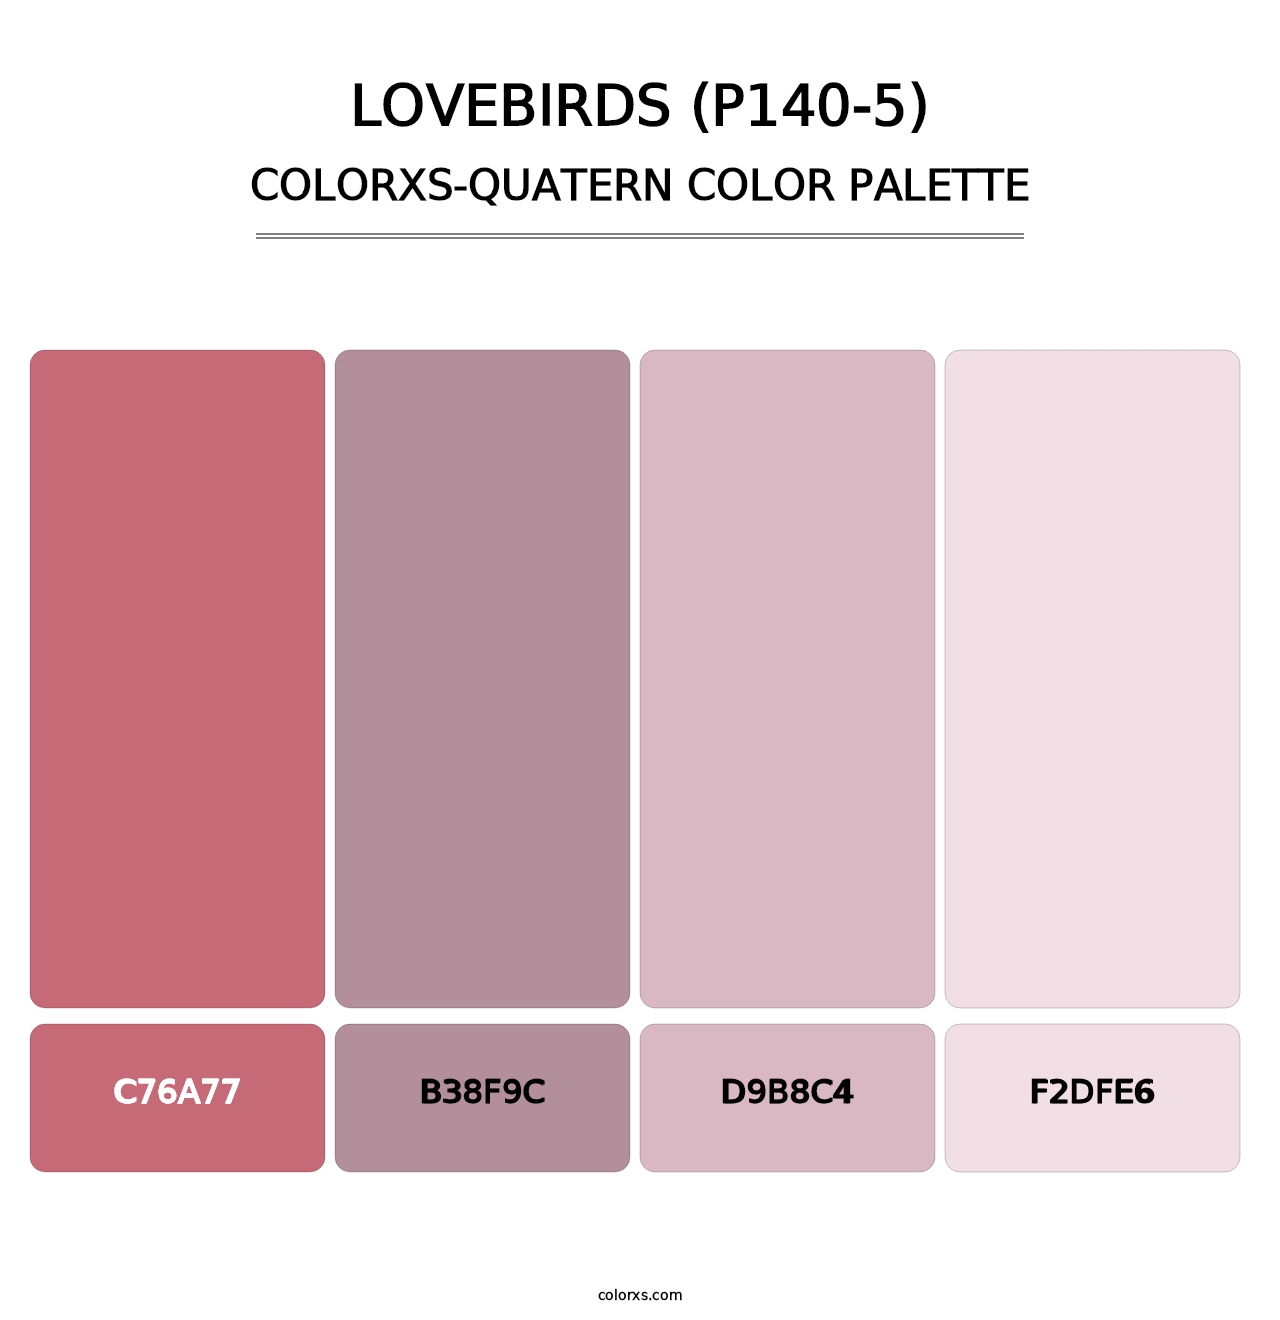 Lovebirds (P140-5) - Colorxs Quatern Palette